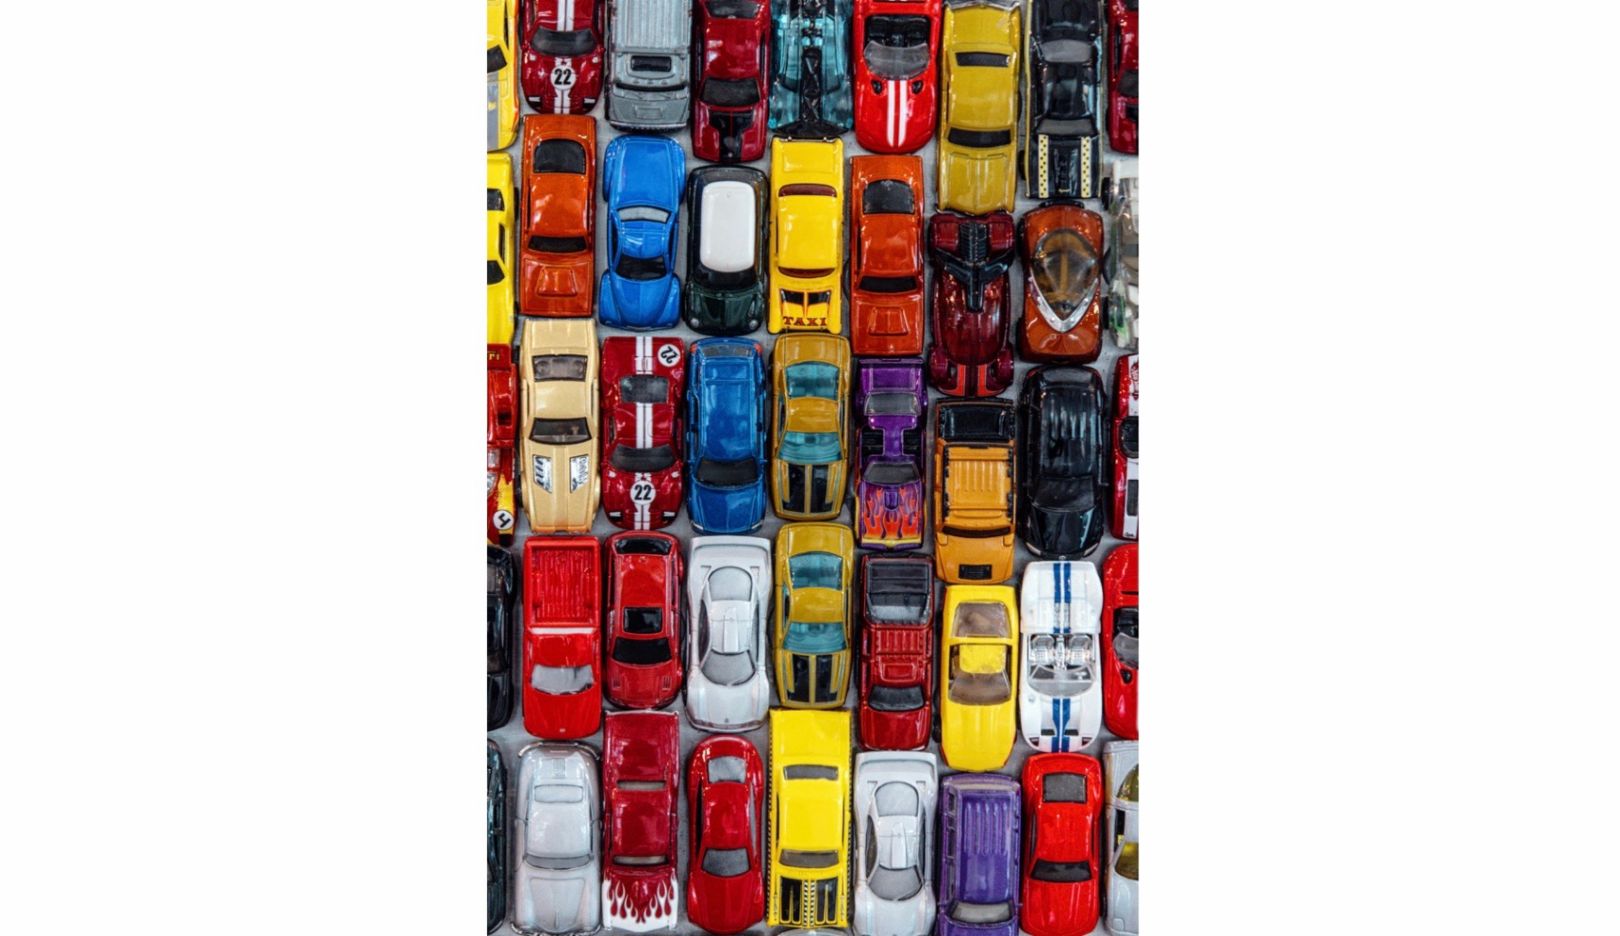 Kunst im öffentlichen Raum: Als Schmuck für ein Parkhaus im kalifornischen Stockton kreierte Huether eine Collage aus 30.000 Spielzeugautos.